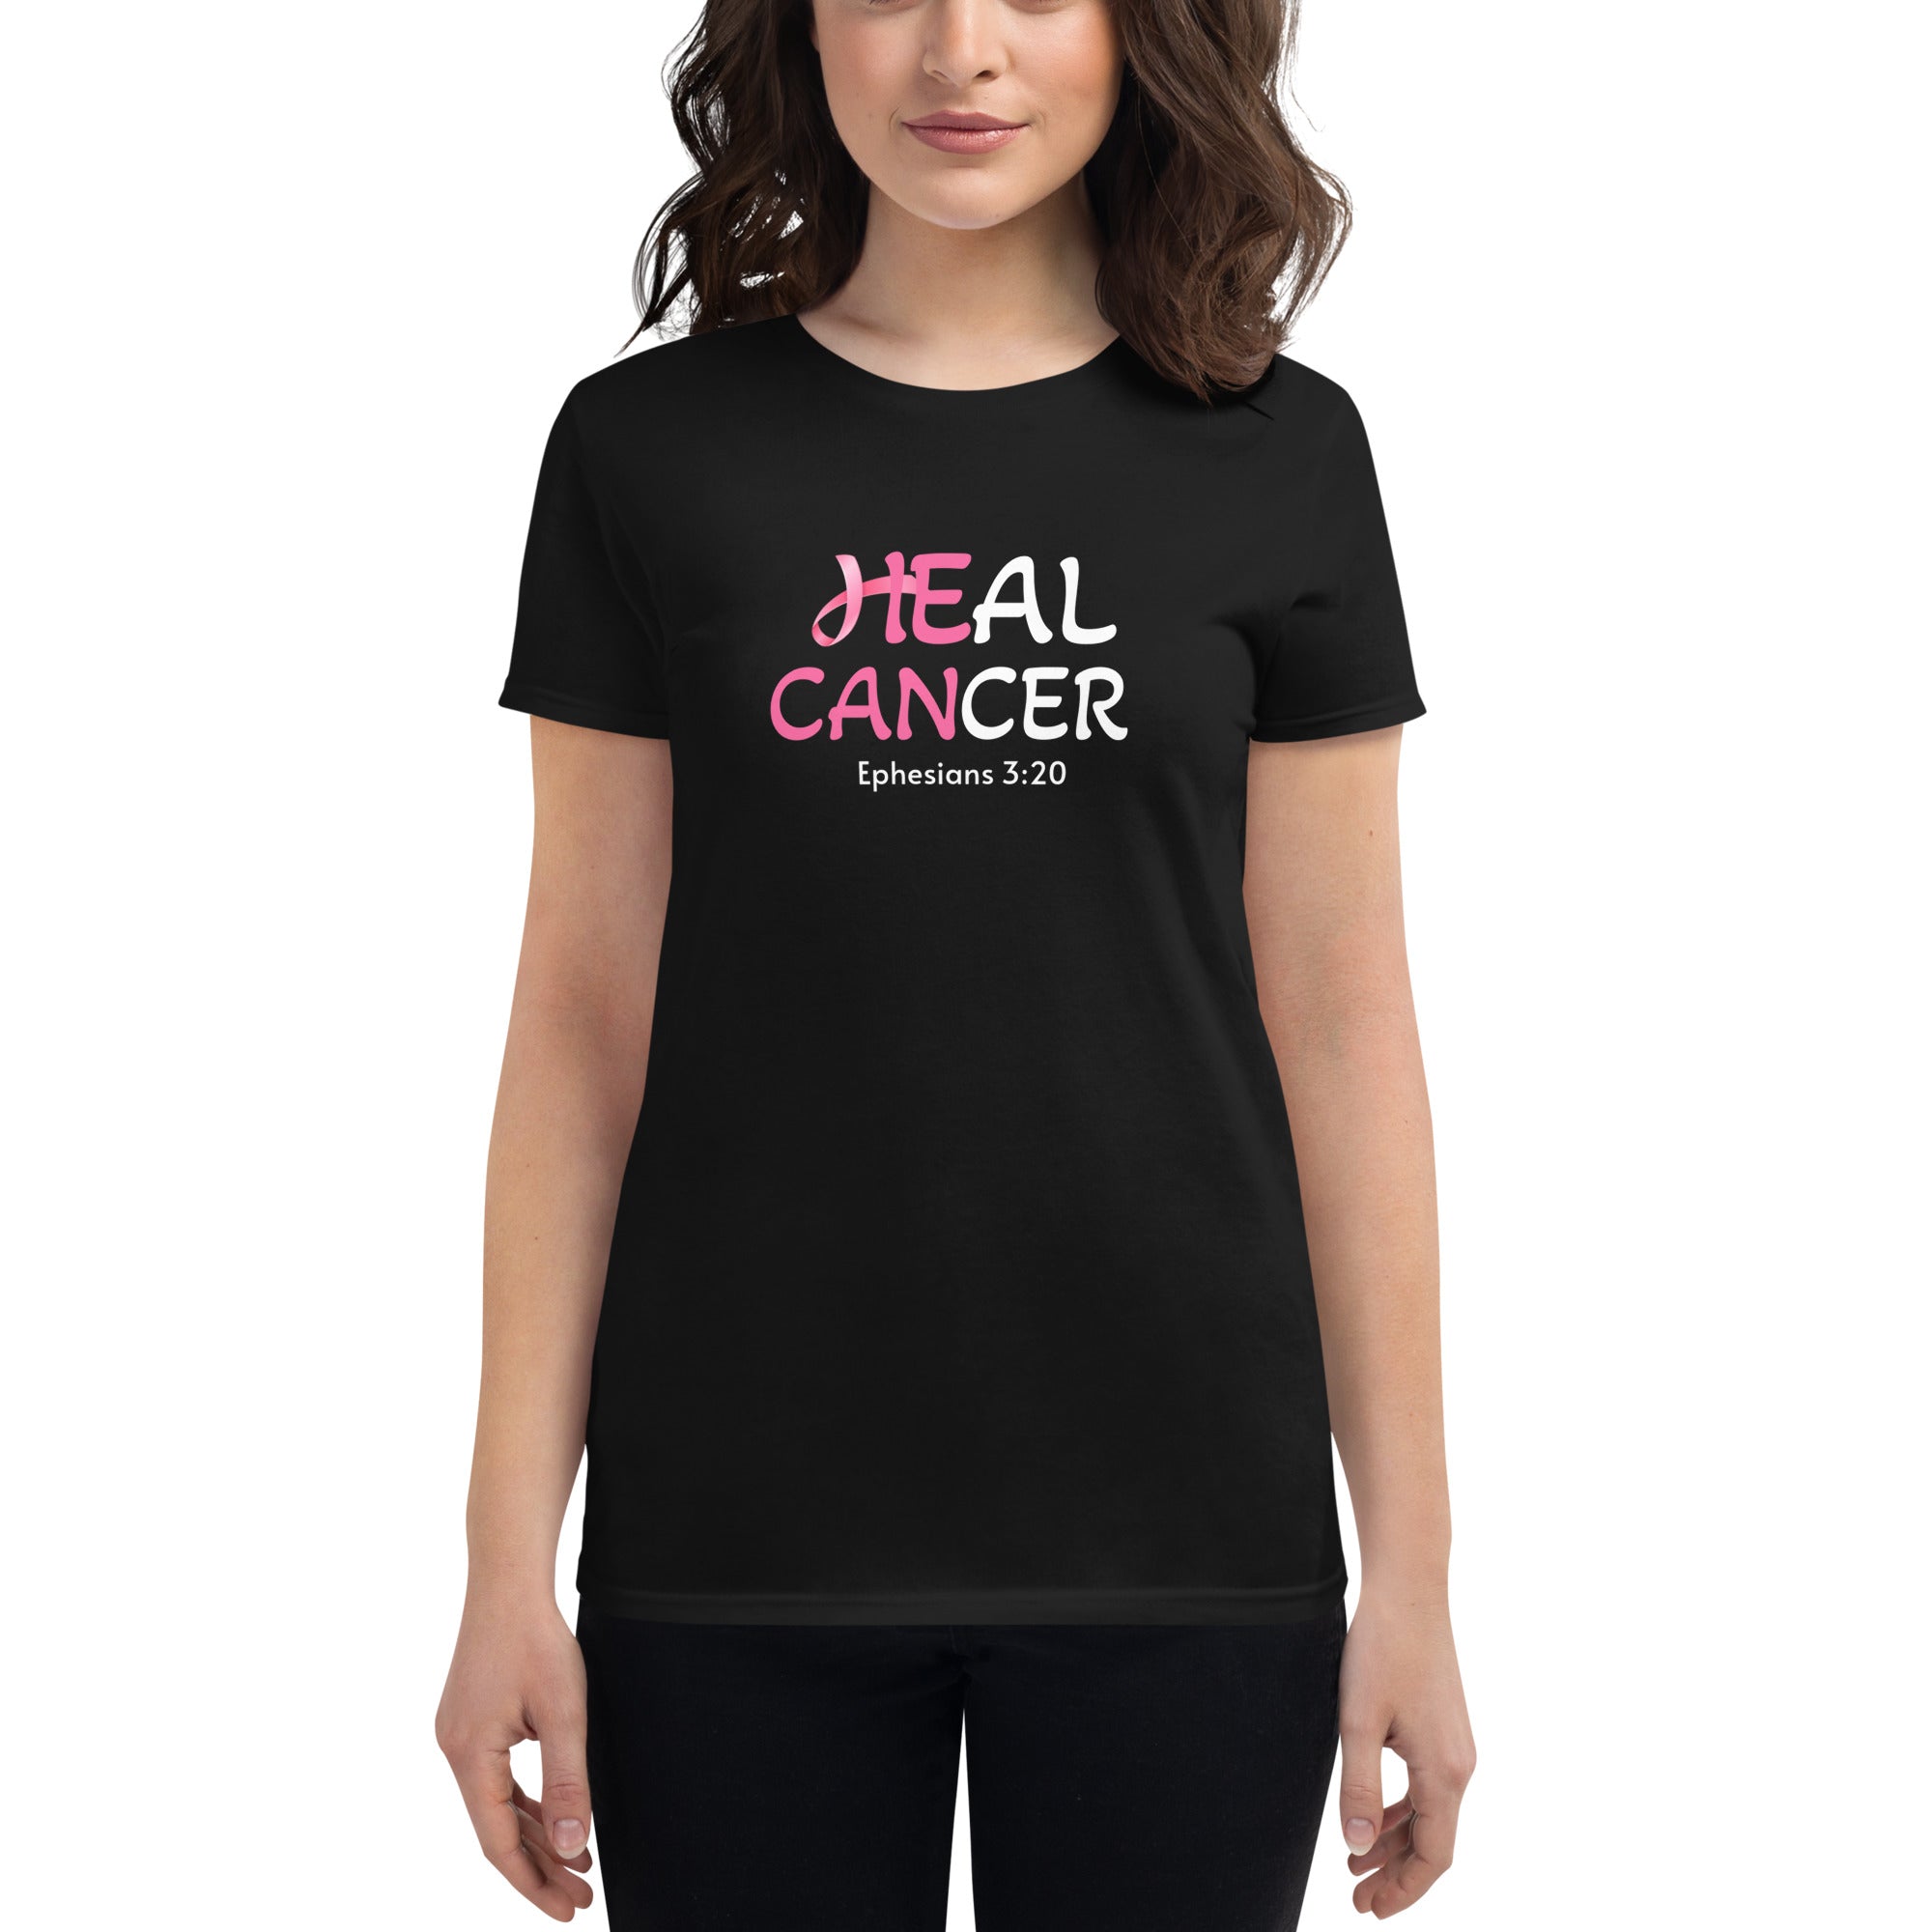 Scyoekwg Womens Short Sleeve Breast Cancer Shirts Comfy